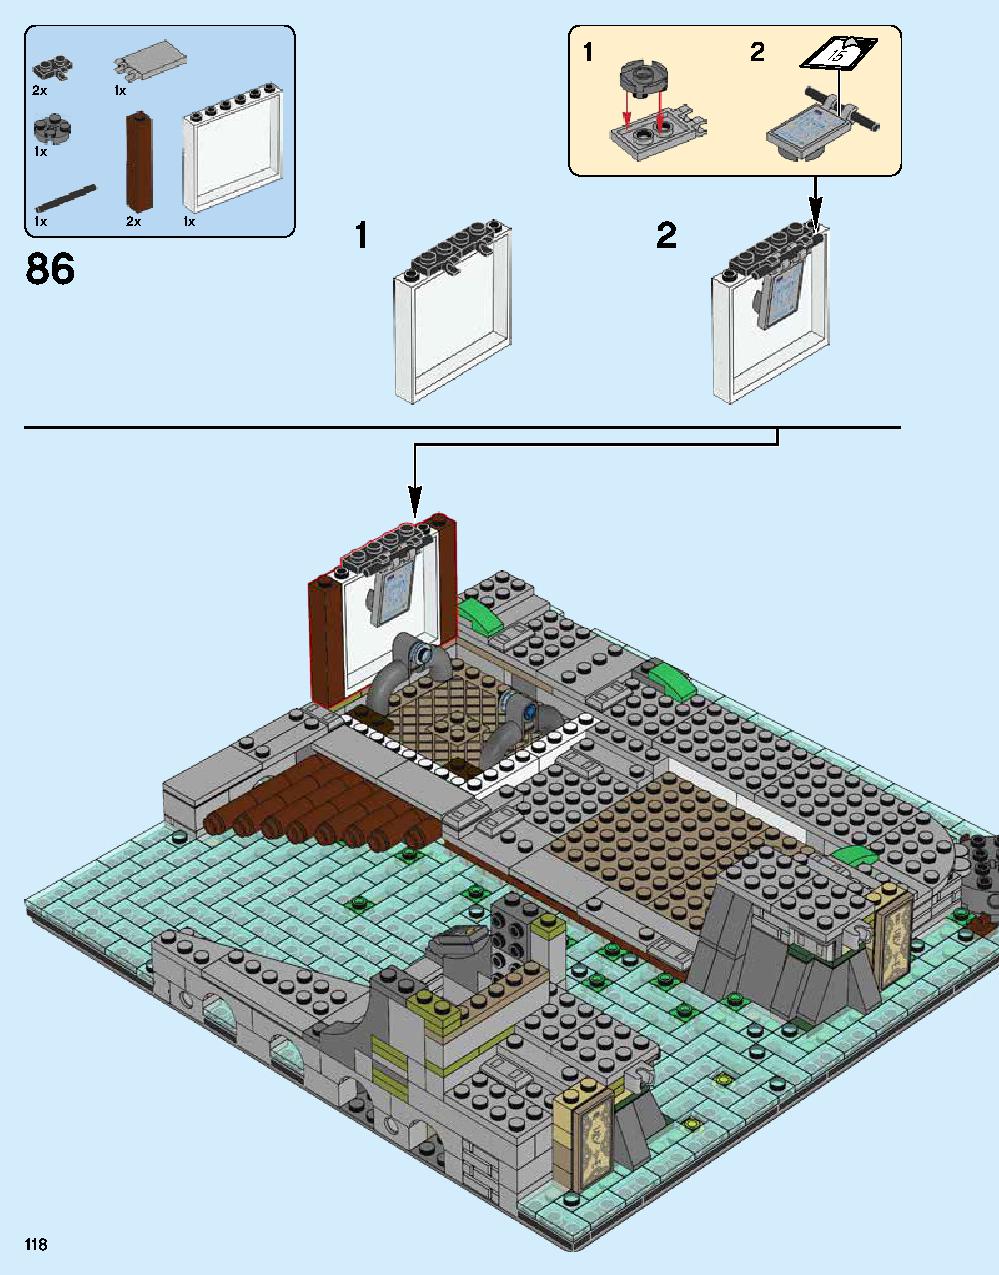 ニンジャゴー シティ 70620 レゴの商品情報 レゴの説明書・組立方法 118 page